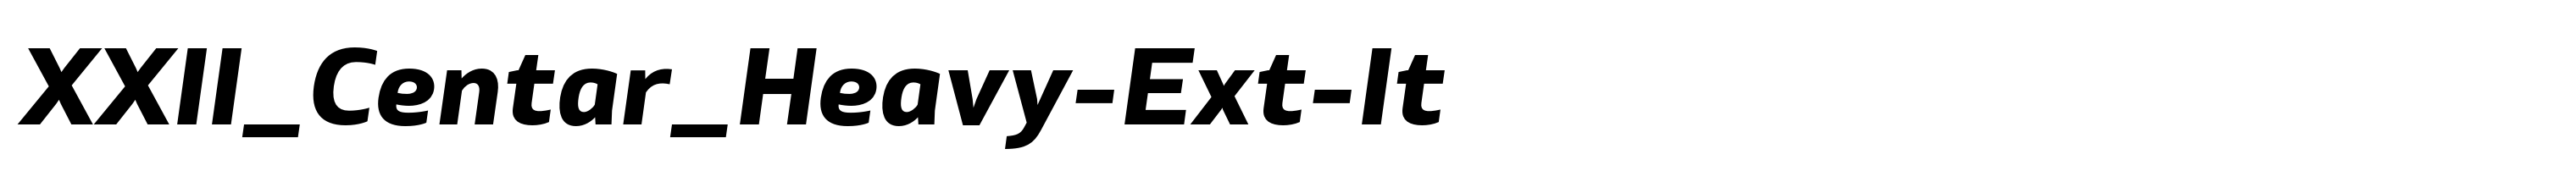 XXII_Centar_Heavy-Ext-It